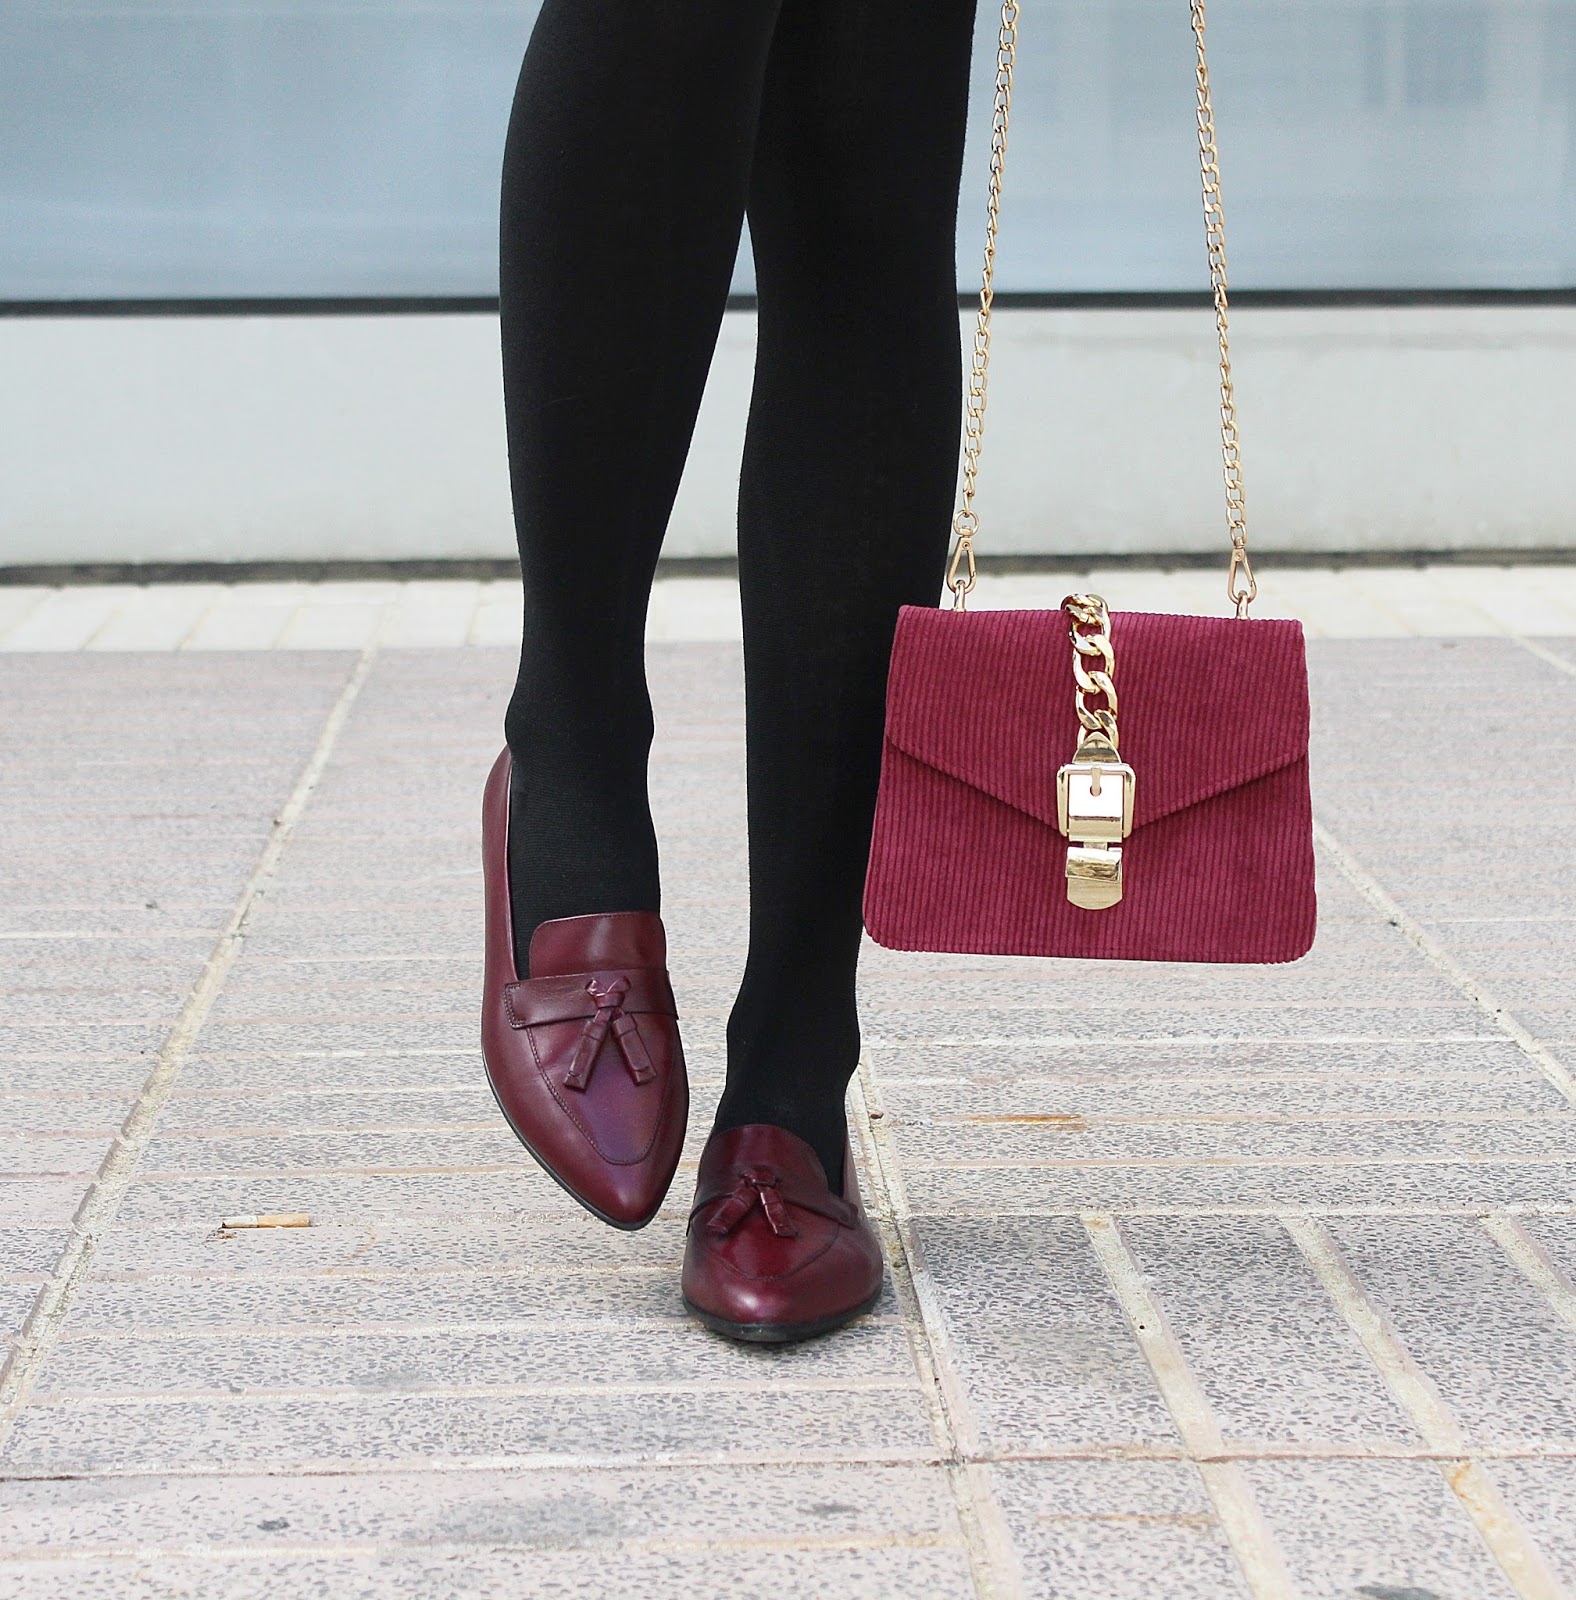 tweed-skirt-jacket-corduroy-bag-burgundy-loafers